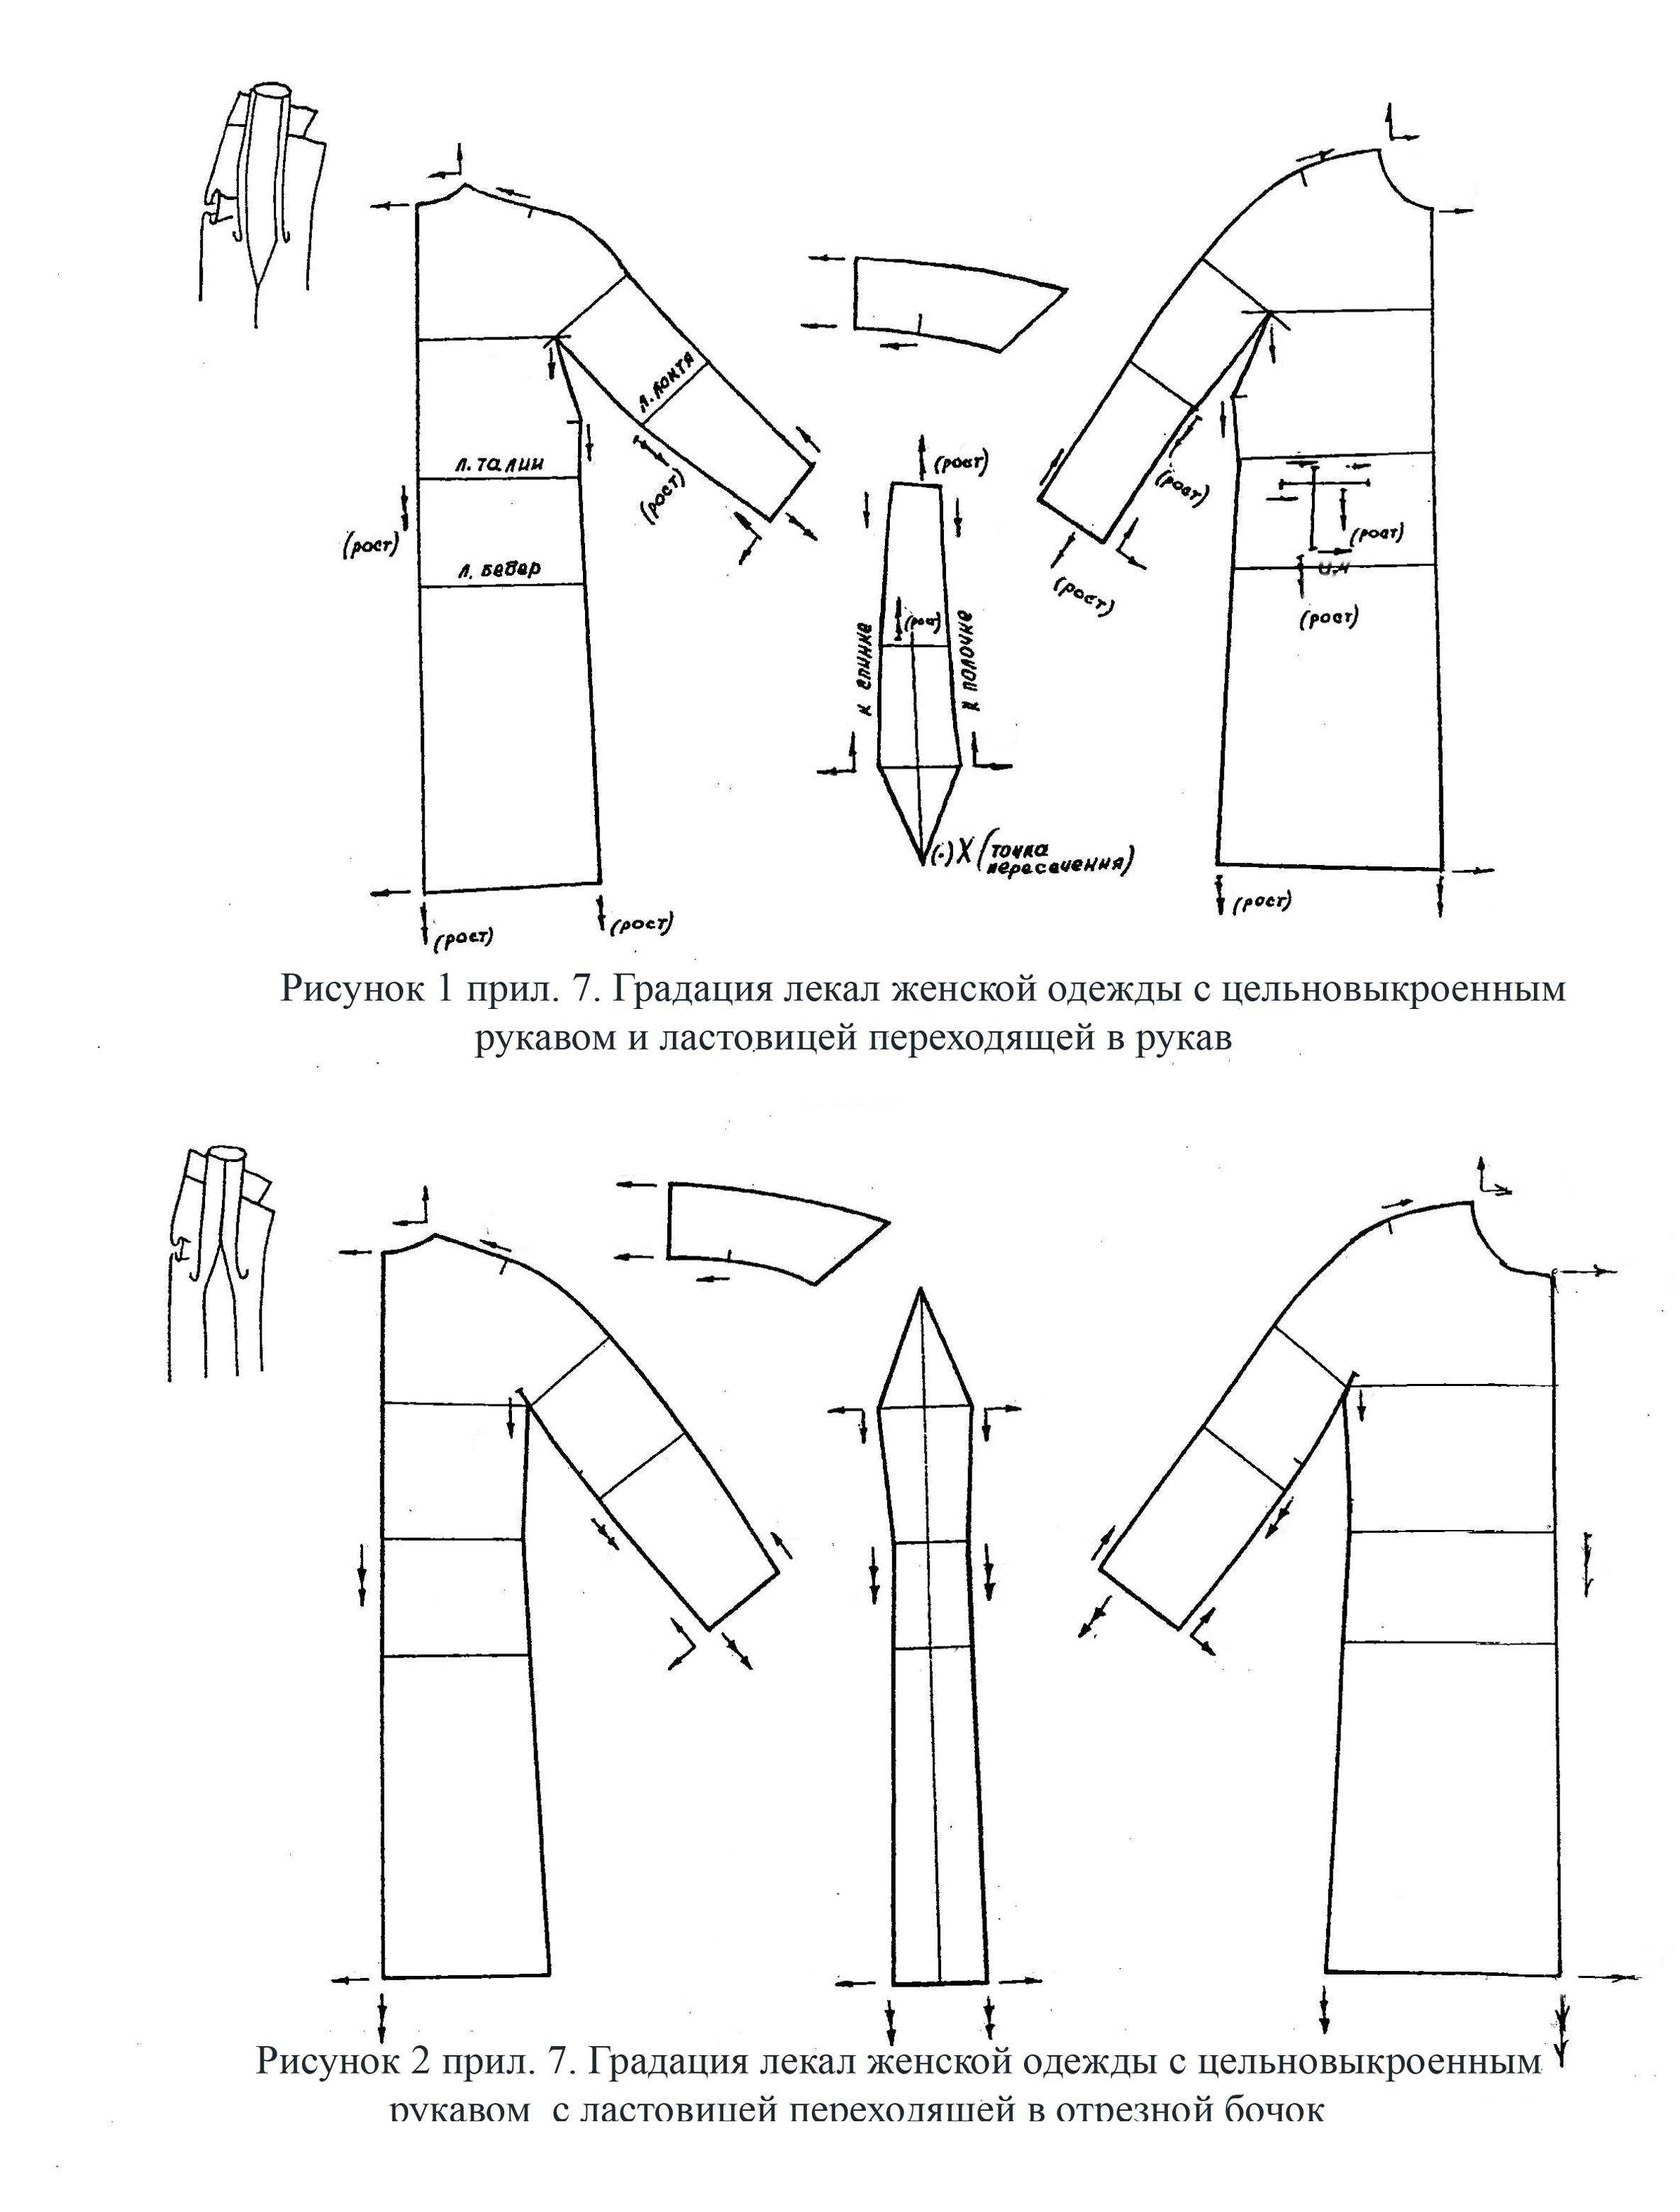 Технология. 7 класс. моделирование плечевого изделия с цельнокроеным рукавом